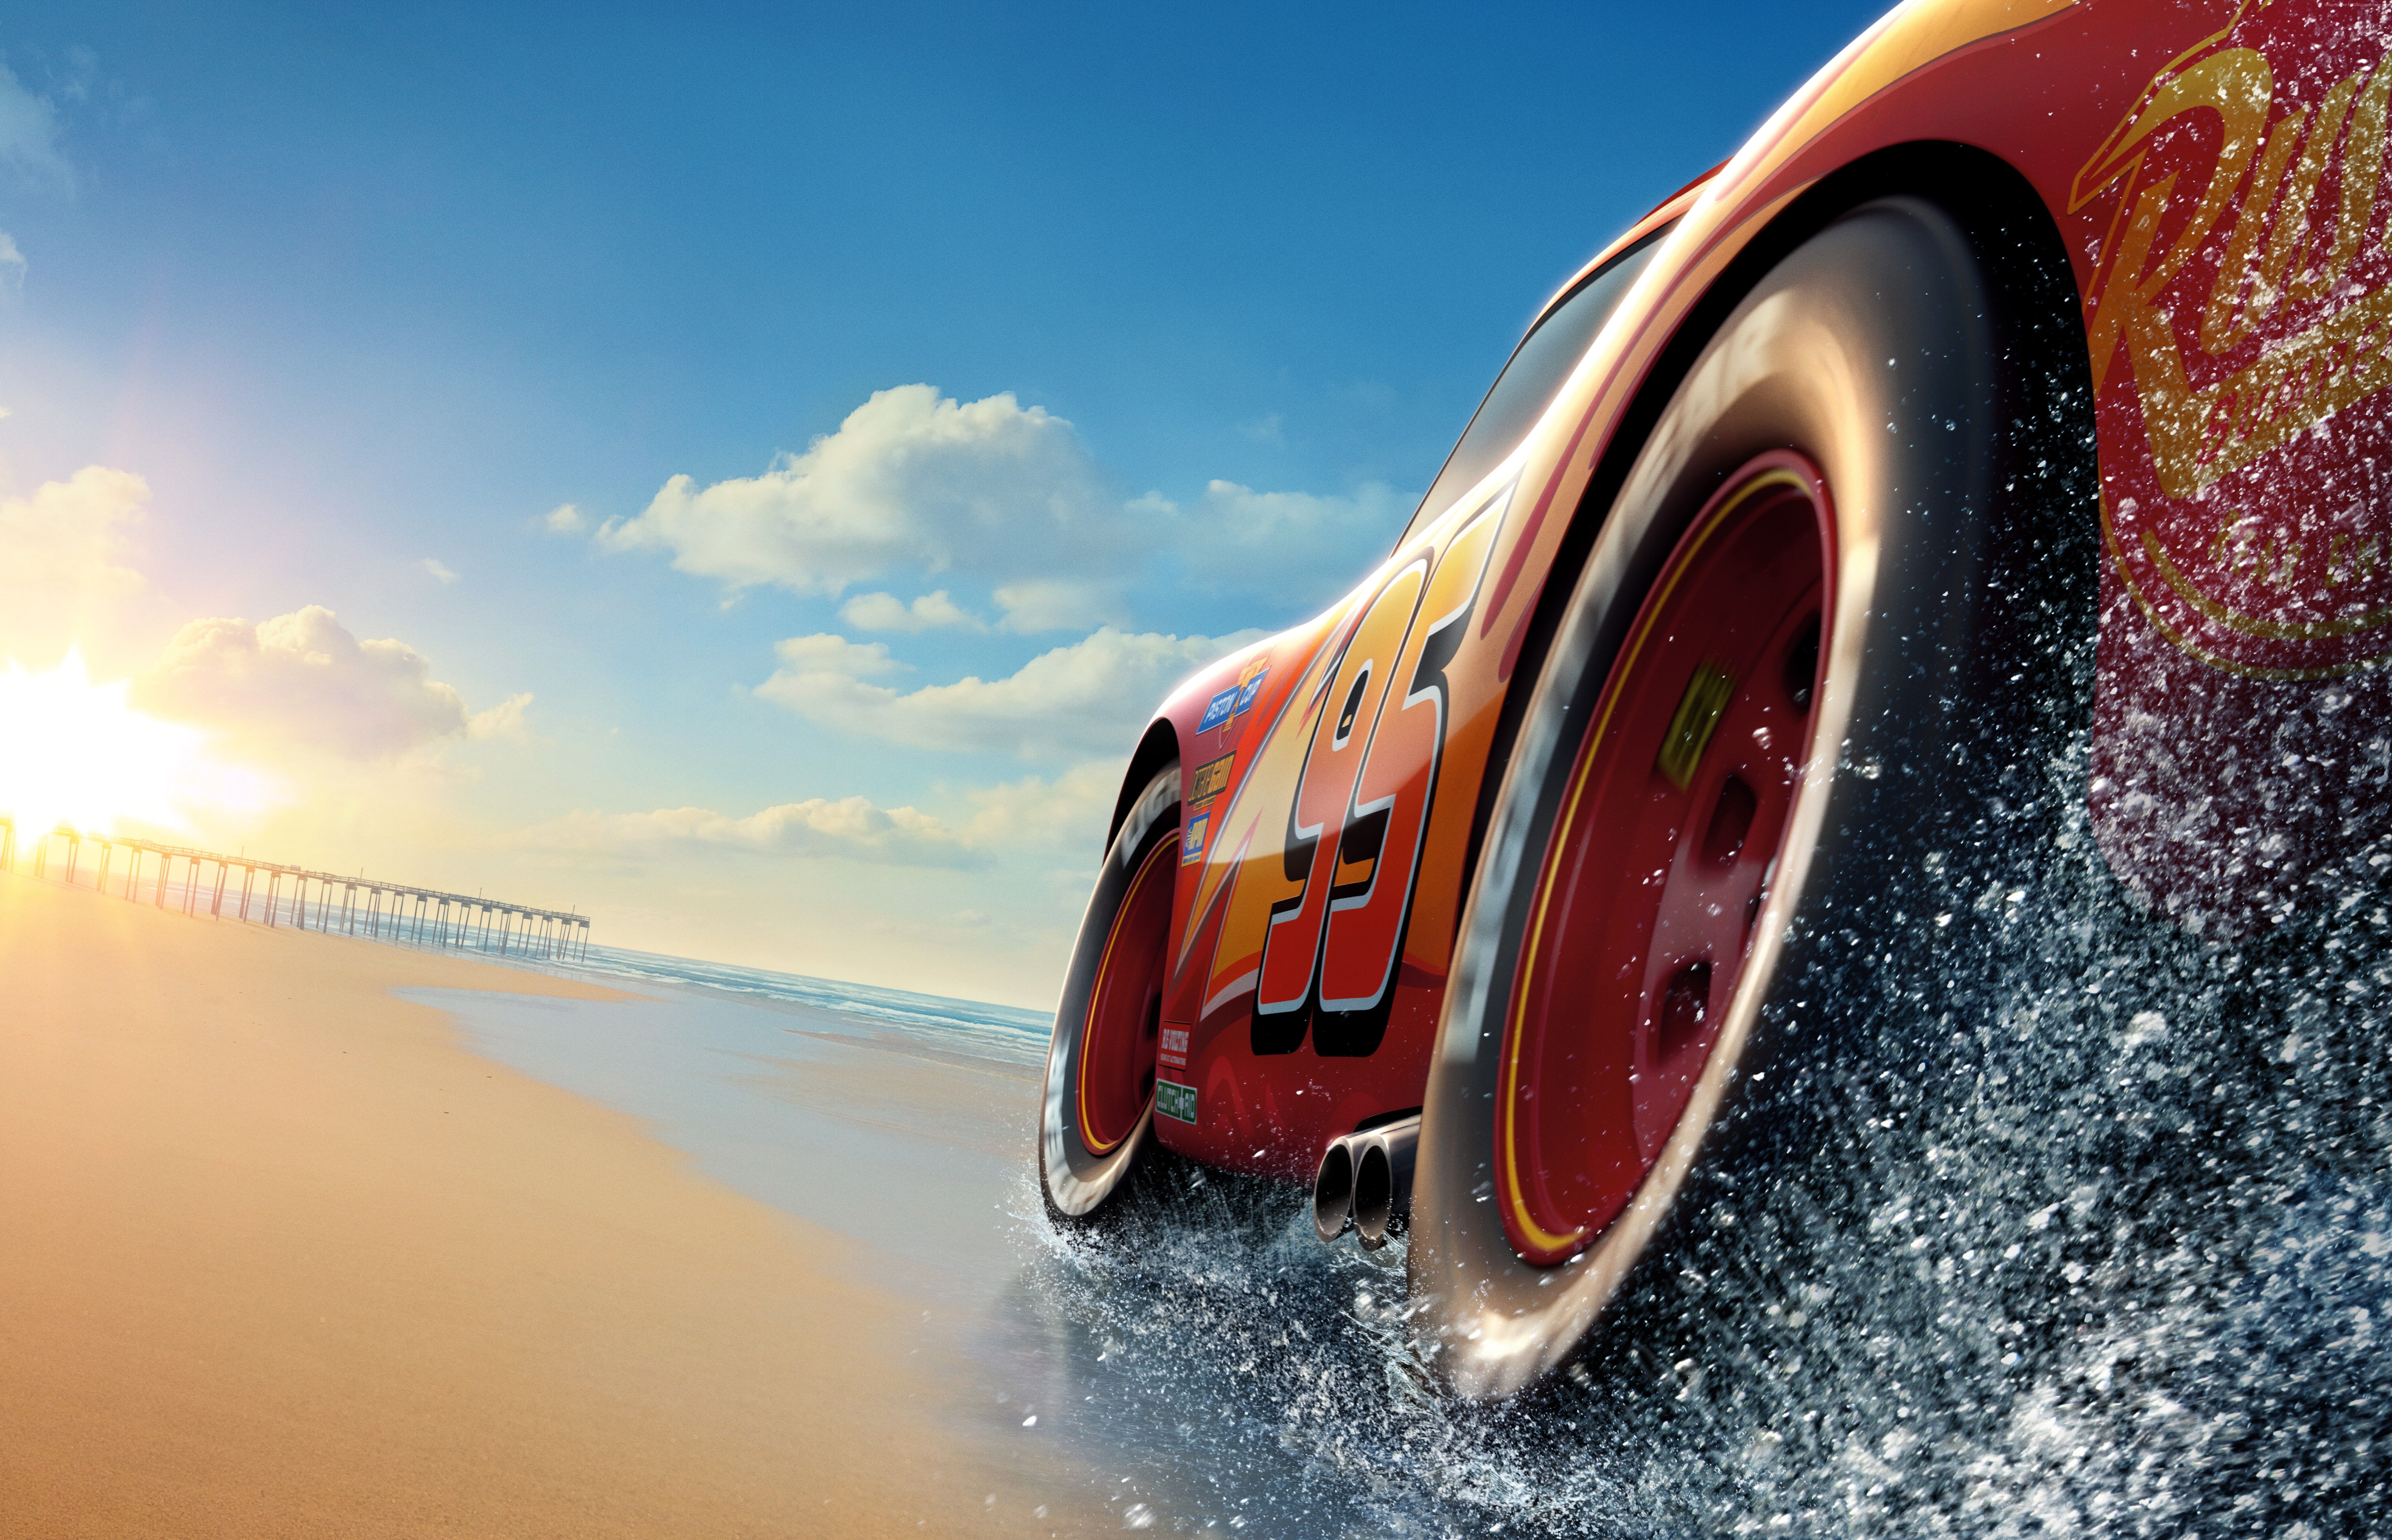 5k k k Lightning McQueen #poster Cars 3 K #wallpaper #hdwallpaper #desktop. Disney cars wallpaper, Car animation, Disney cars 3